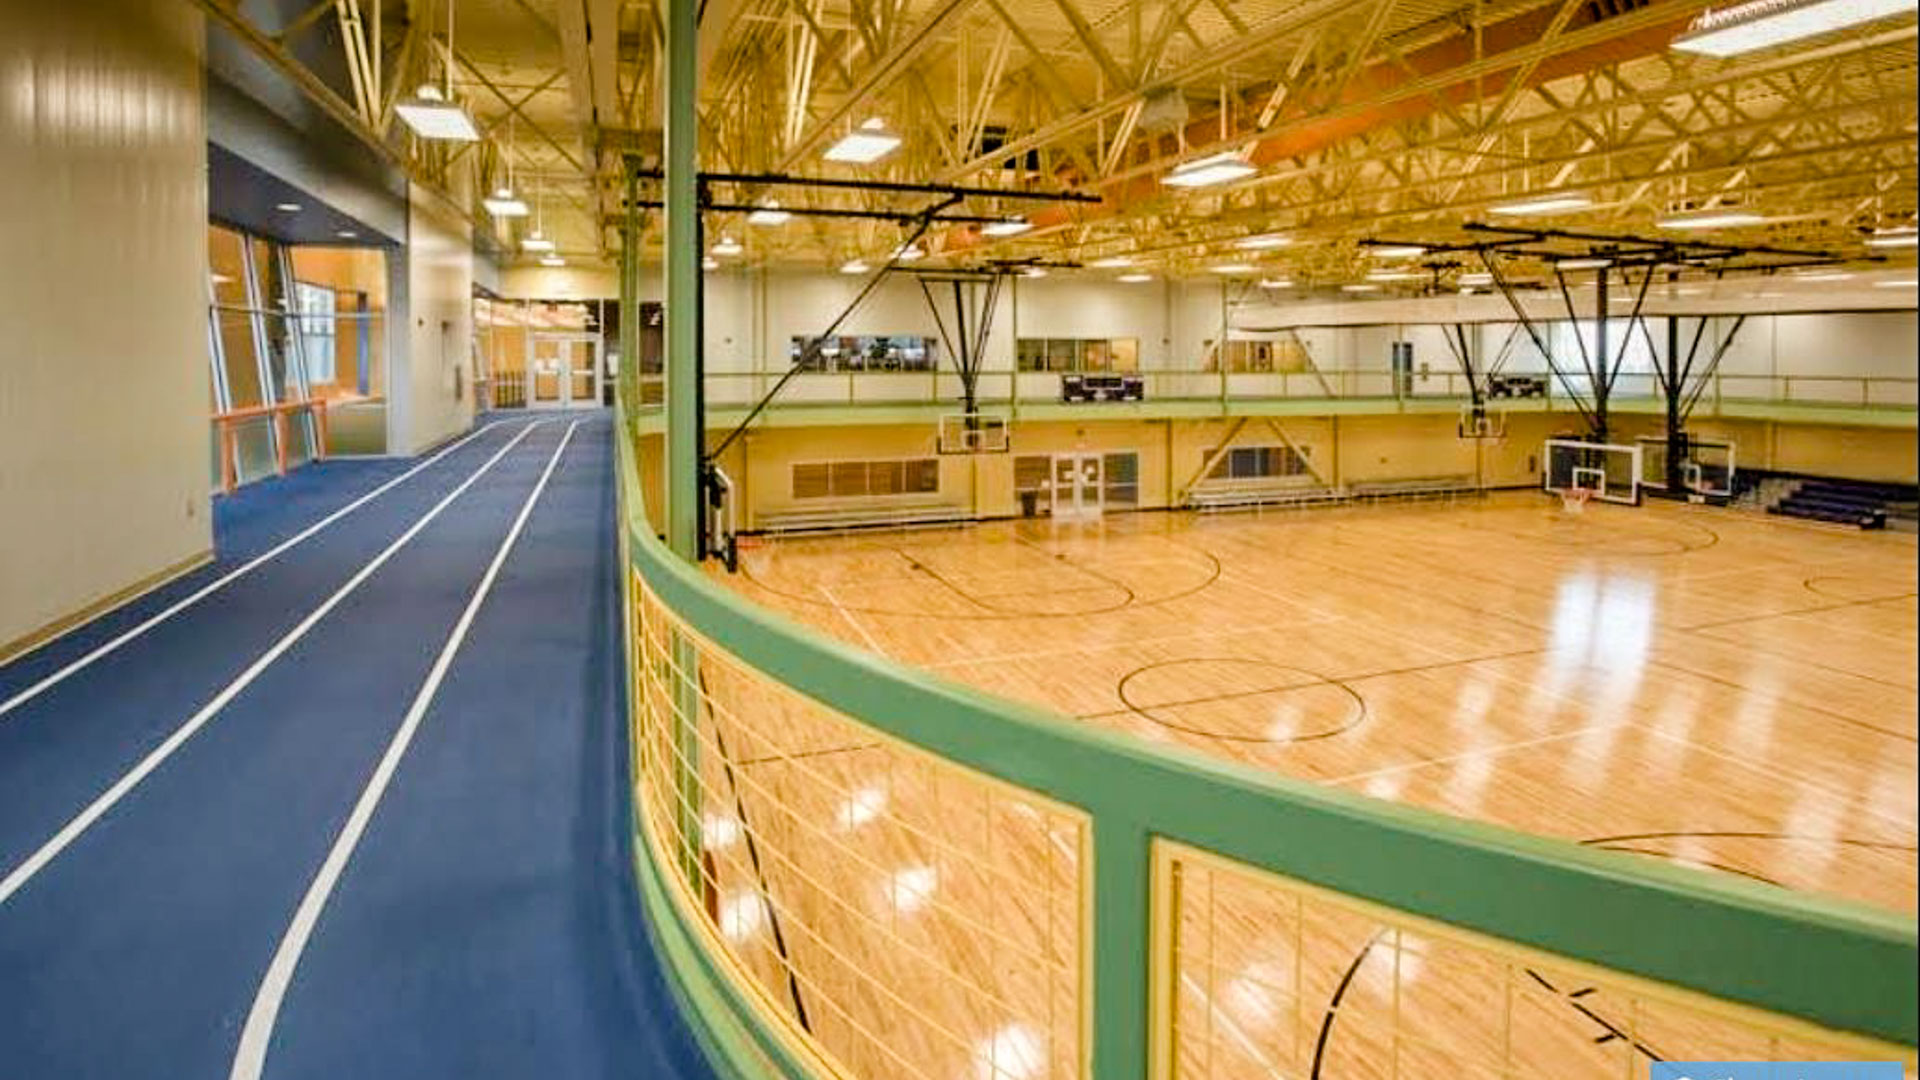 1903122 RecPlex Gymnasium Floor Walking Track NOP - RecPlex Gymnasium Floor Gets Refinishing on Steroids